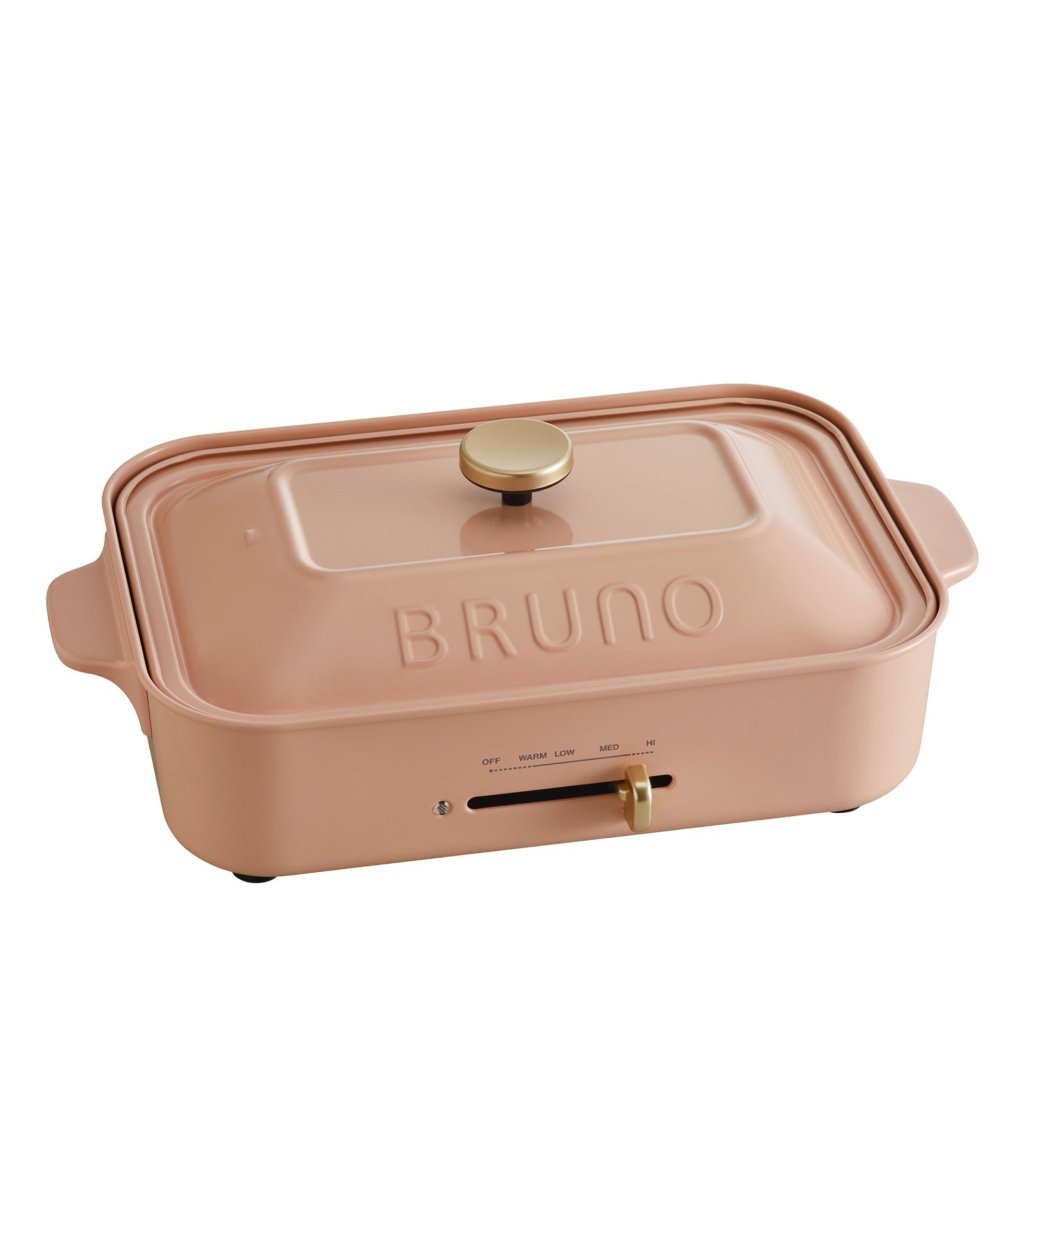 BRUNO ブルーノ コンパクトホットプレート 限定カラー ロシアンピンク 